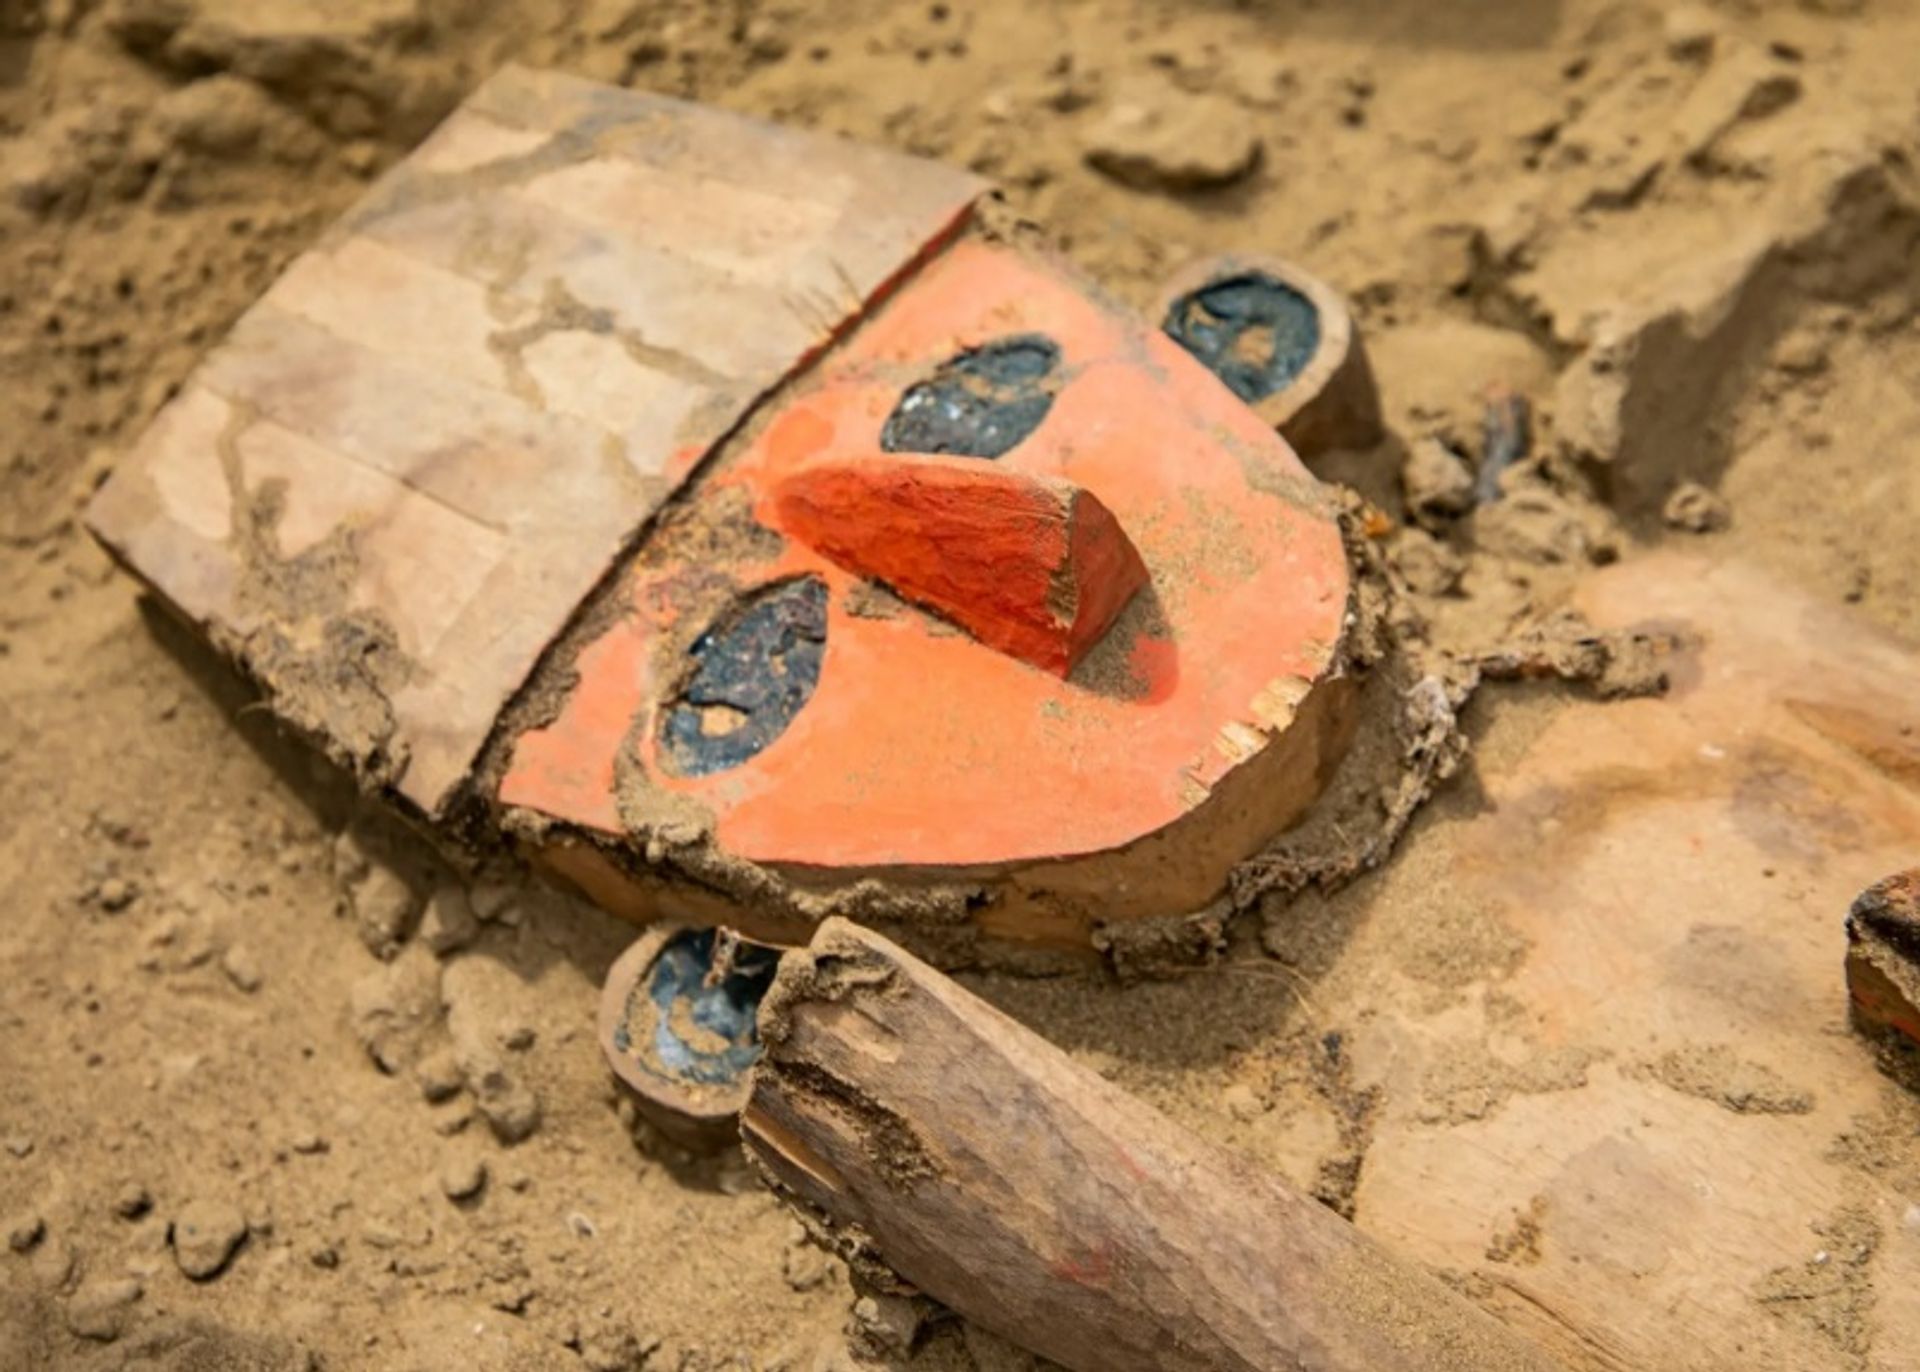 ארכיאולוגים גילו את הפסל לצד זרעי נקטנדרה, סוג שנמצא בקבורות צ'ימו מסביבם של ילדים ובני נוער שהוקרבו לקורבנות

משרד התרבות הפרואני